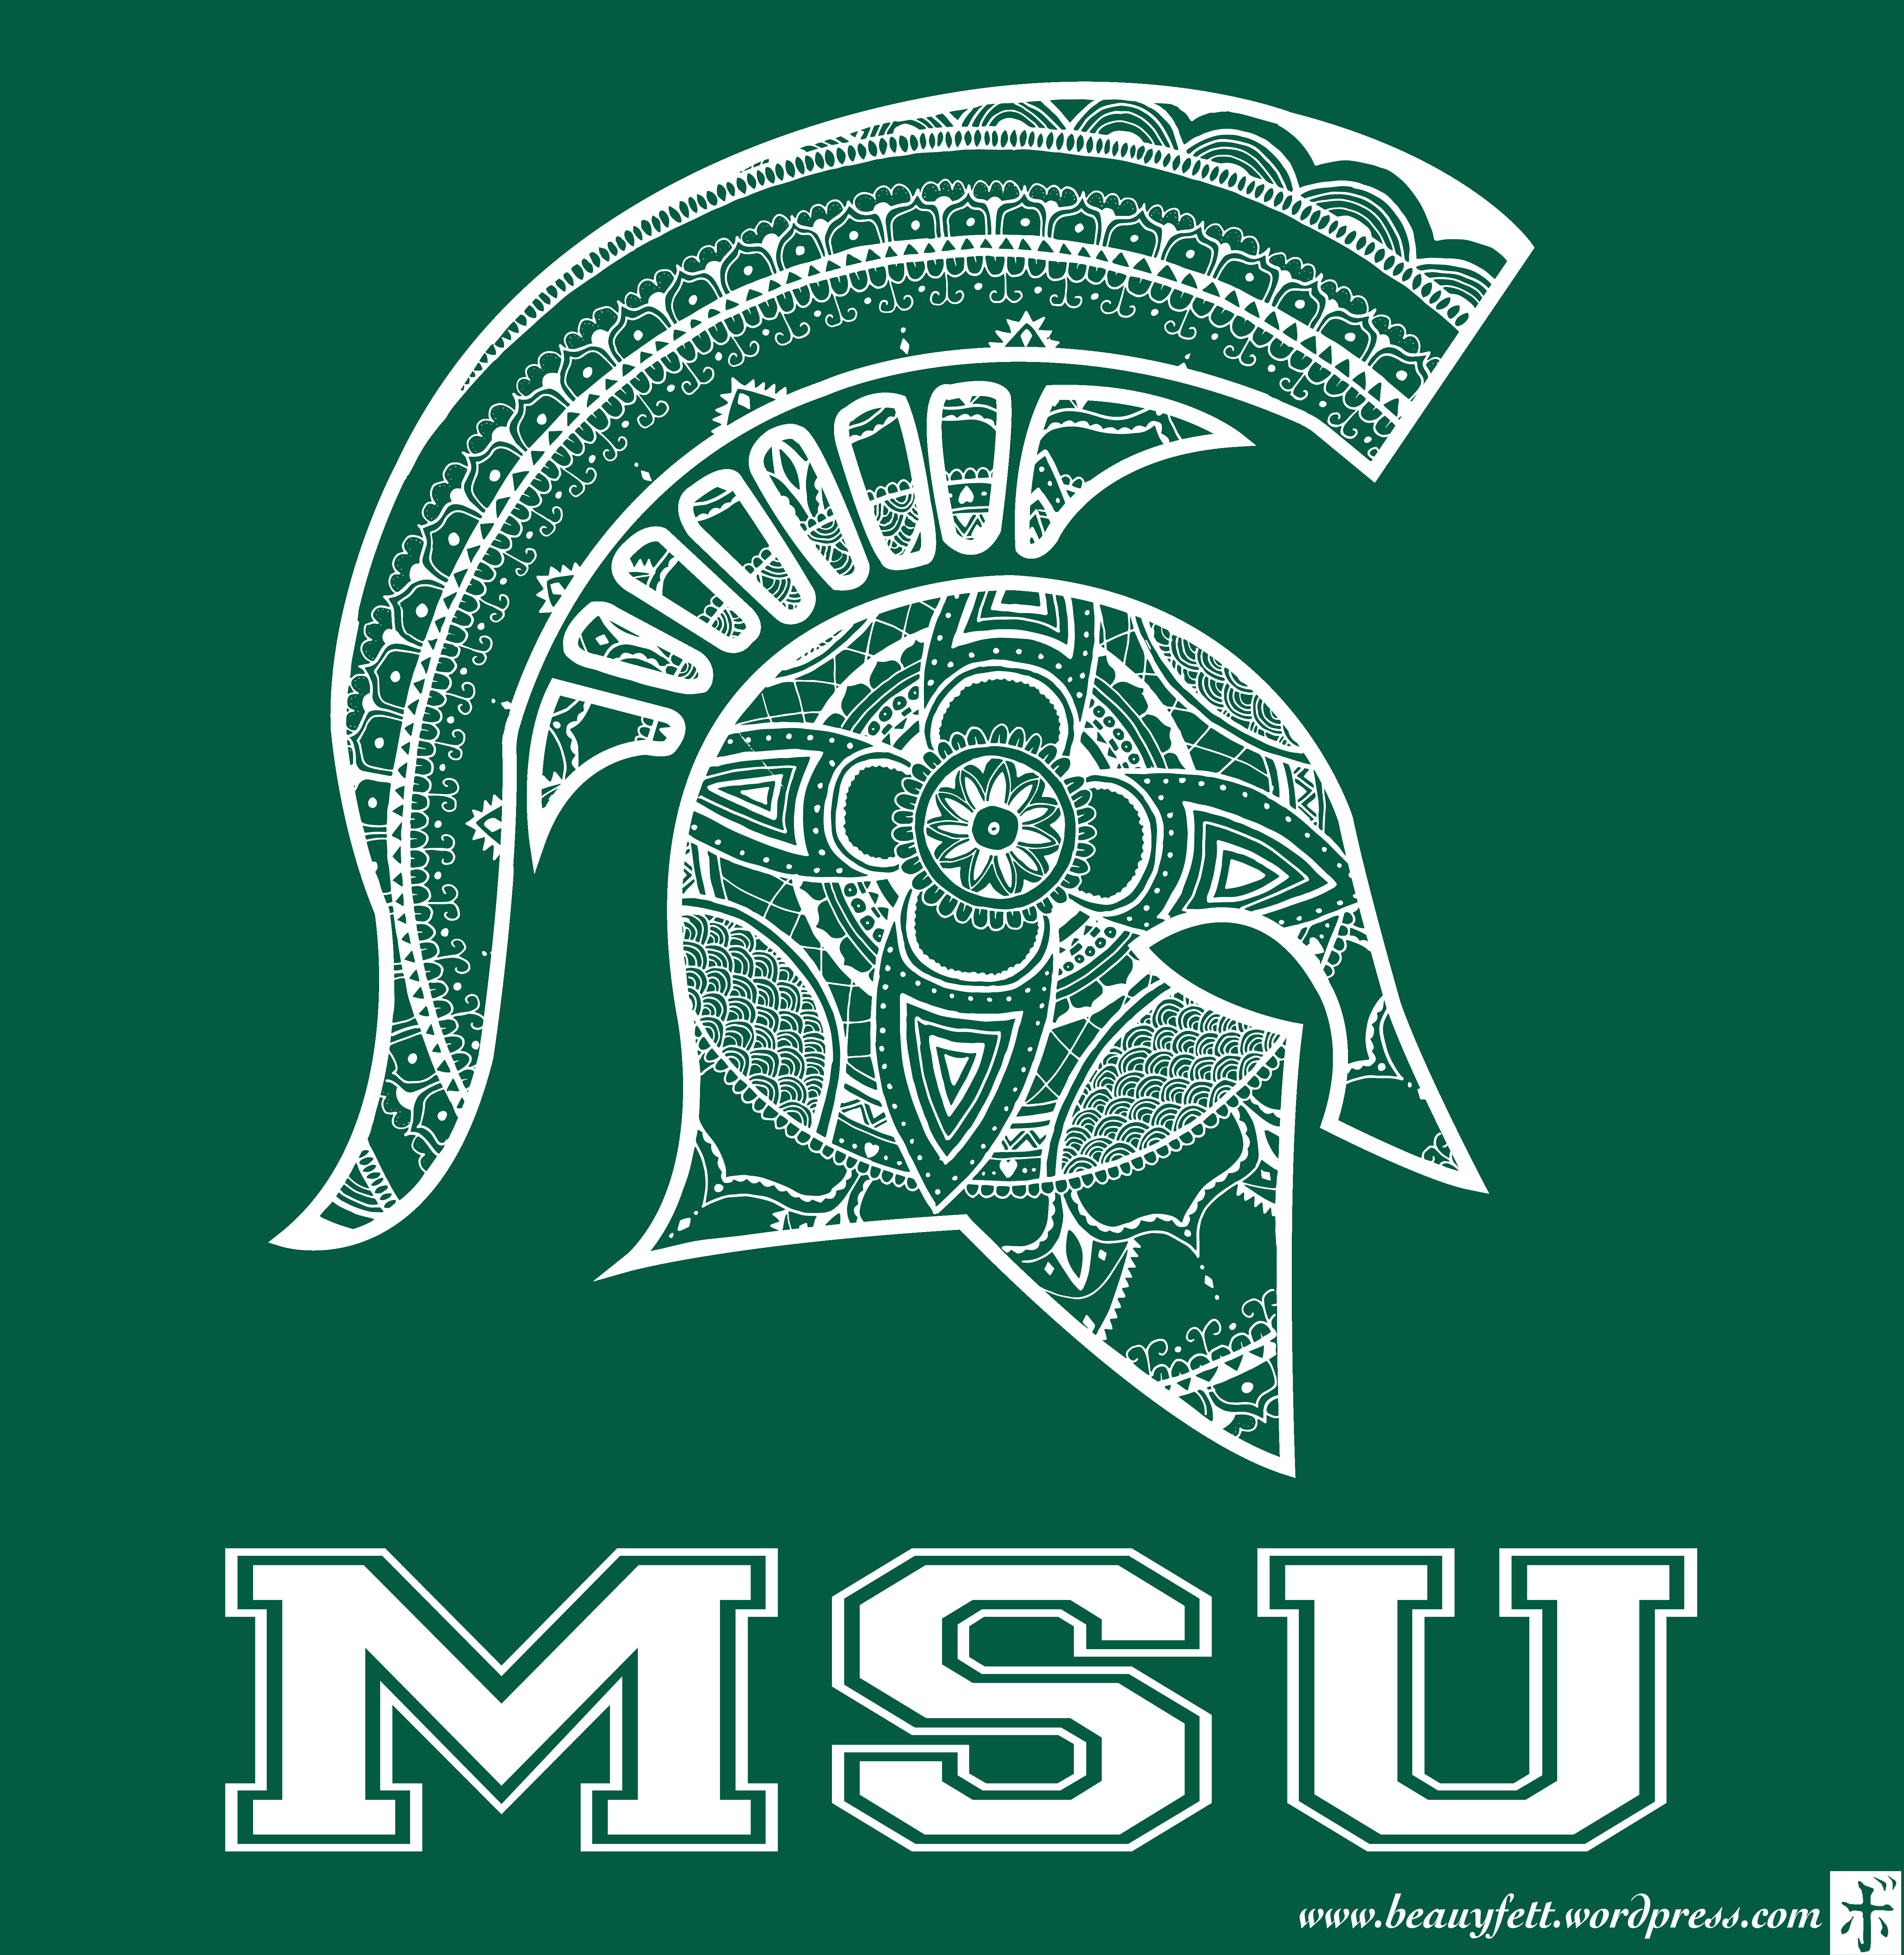 Michigan State University Logos